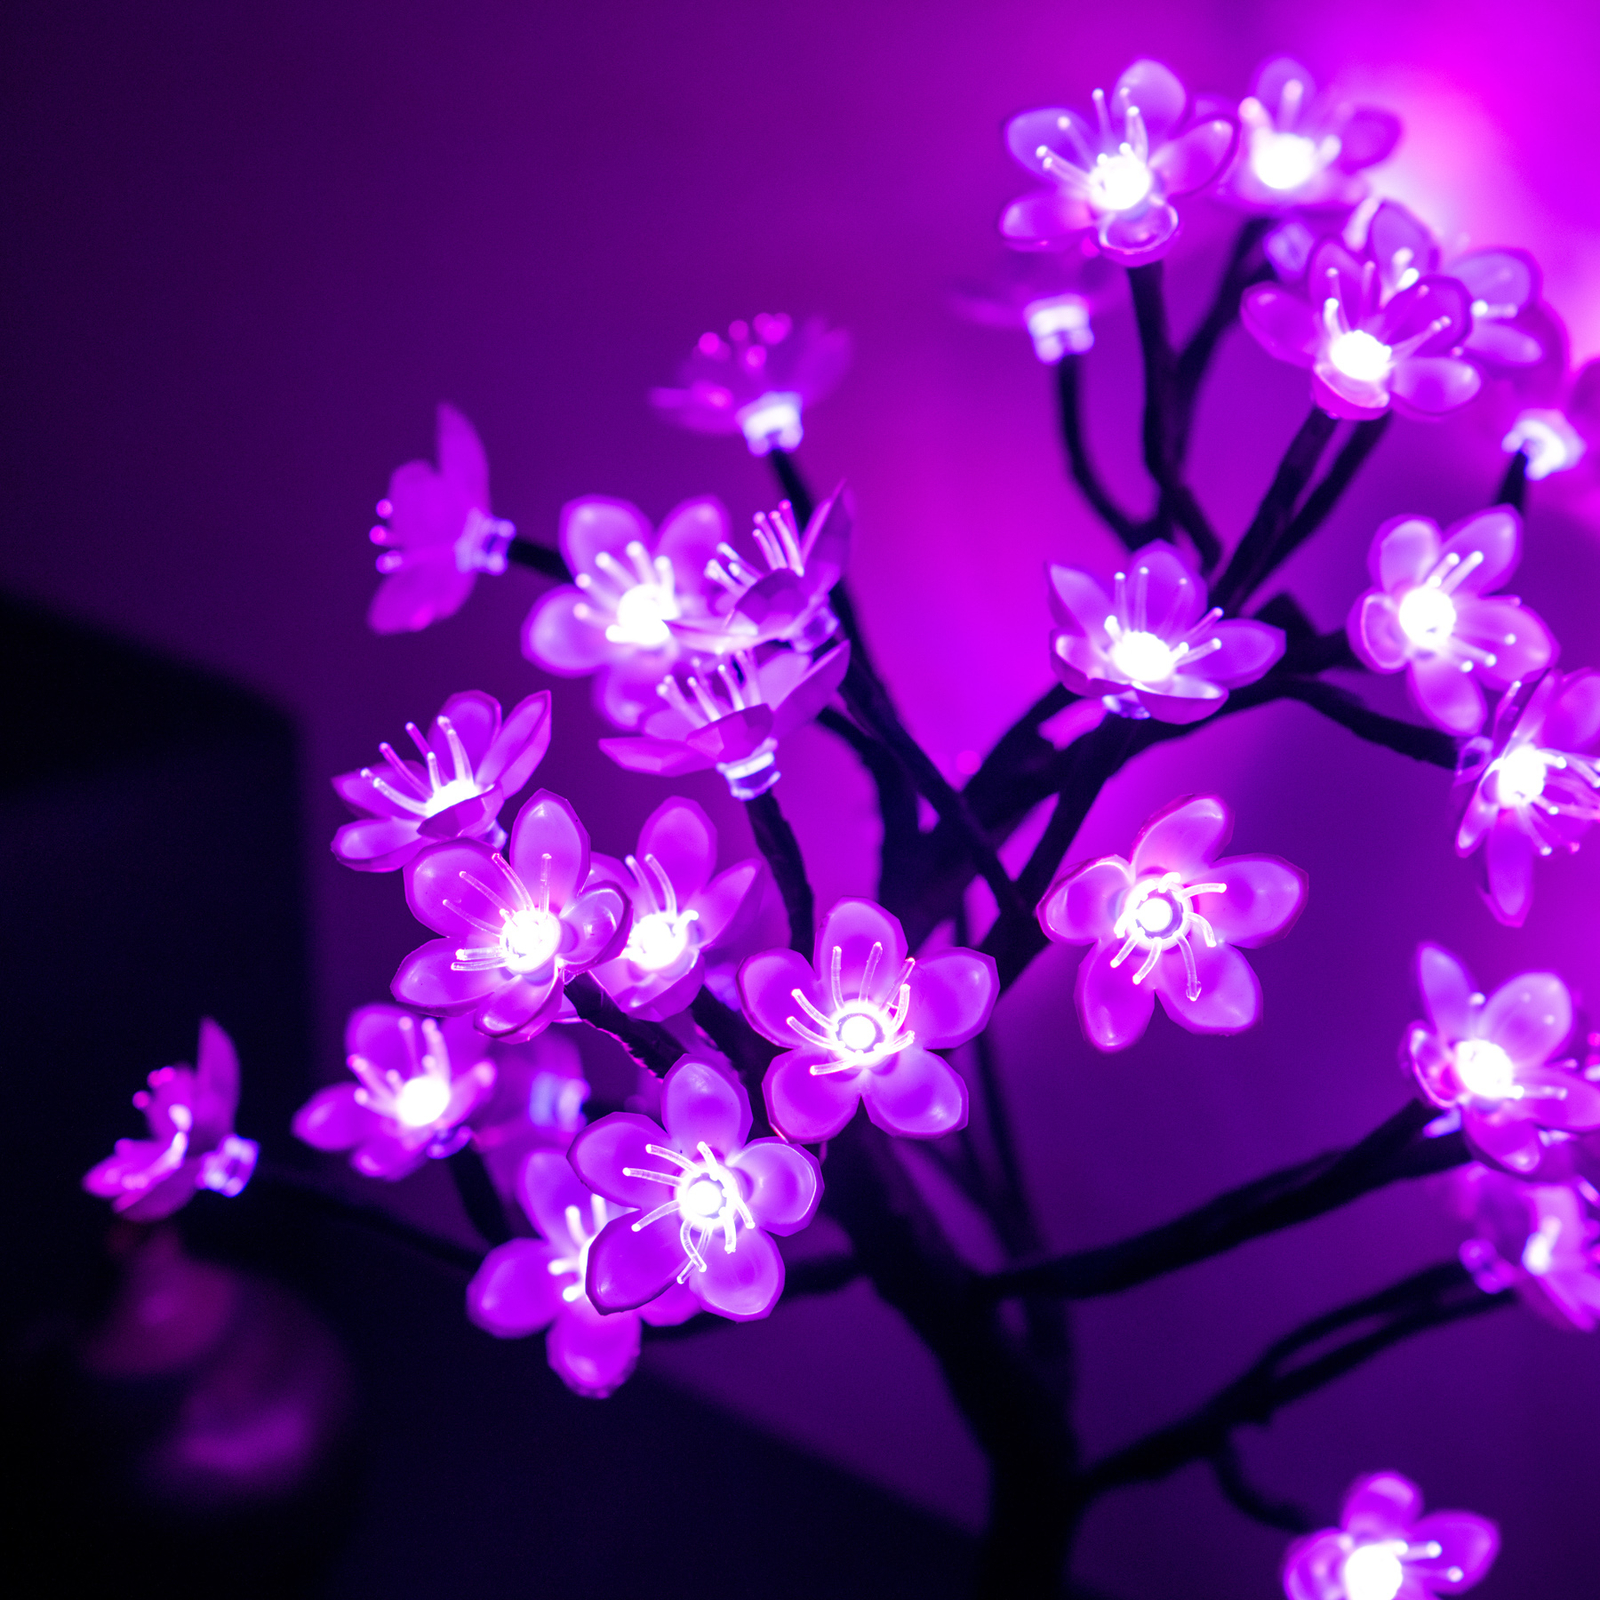 Lite Bulb Moments διακοσμητικό επιτραπέζιο φωτιστικό δέντρο με άνθη